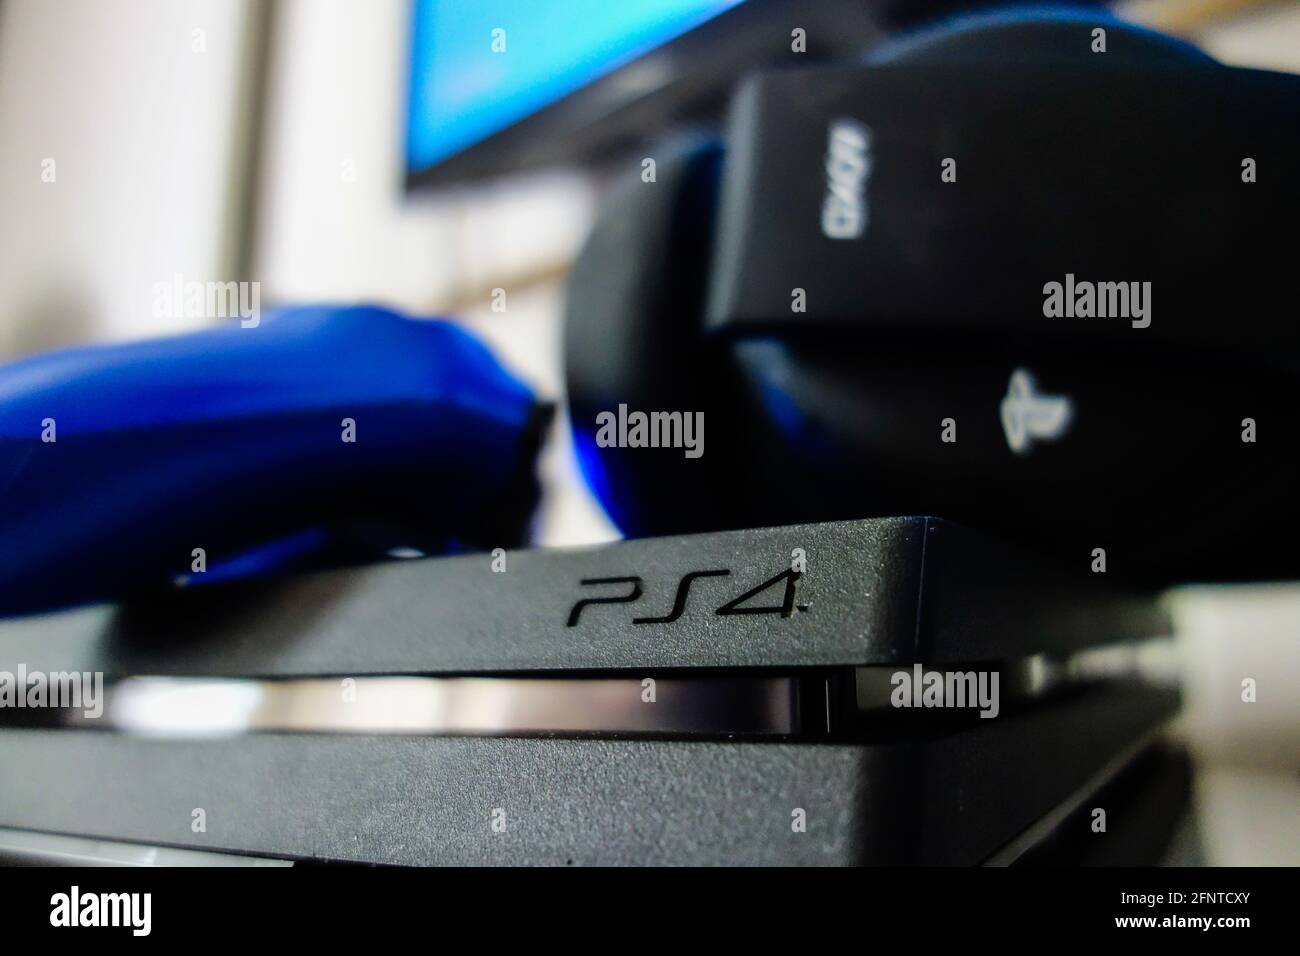 PS4 Pro: cinco acessórios do console da Sony para comprar no Brasil em 2021